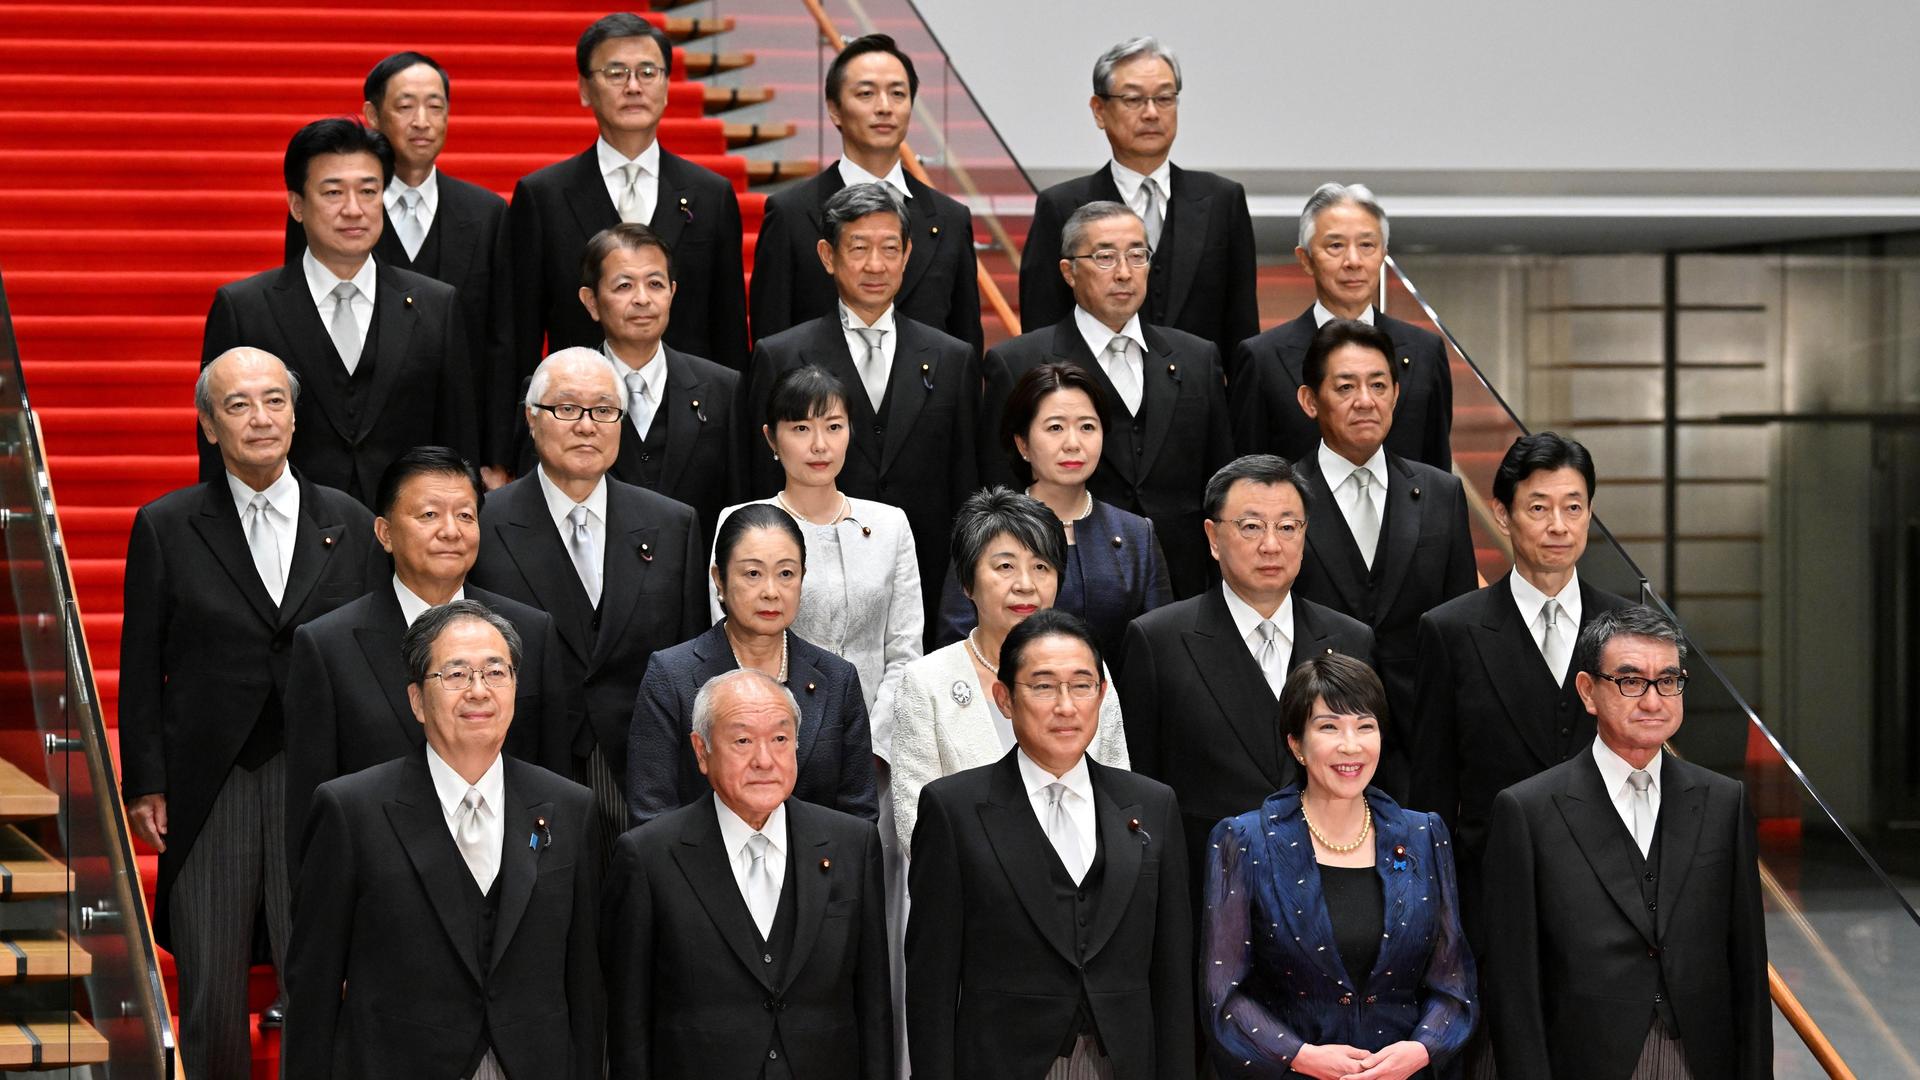 
September 14, 2023, Tokyo, Japan: Der japanische Premierminister Fumio Kishida (vorne mitte) mit seinem Kabinett auf einer roten Treppe im September 2023.